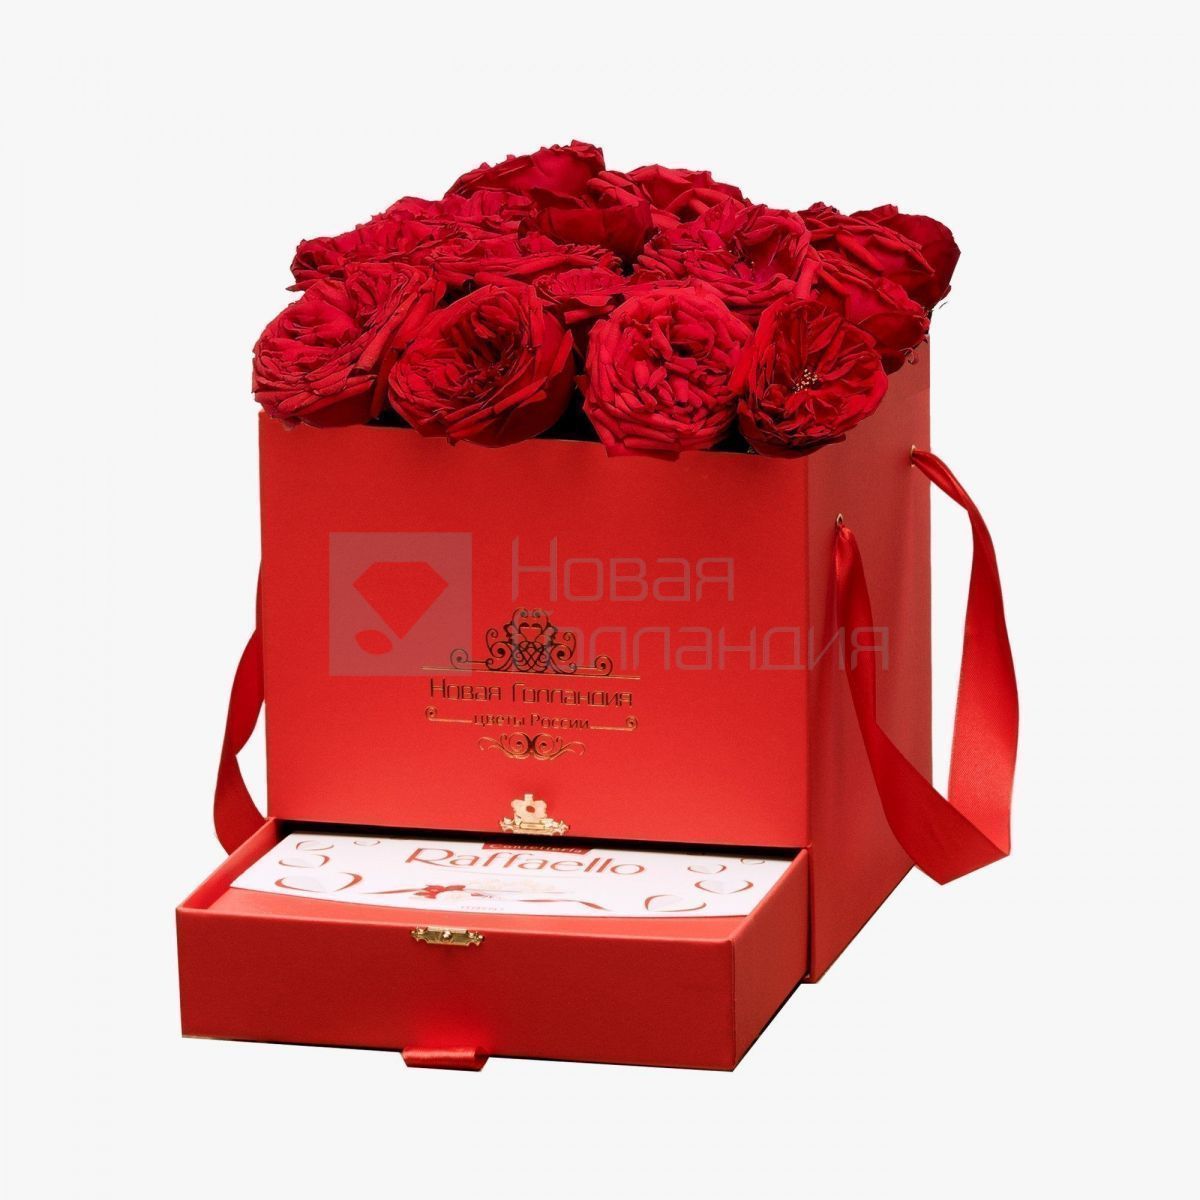 15 красных пионовидных роз Премиум в красной коробке шкатулке рафаэлло в подарок №377